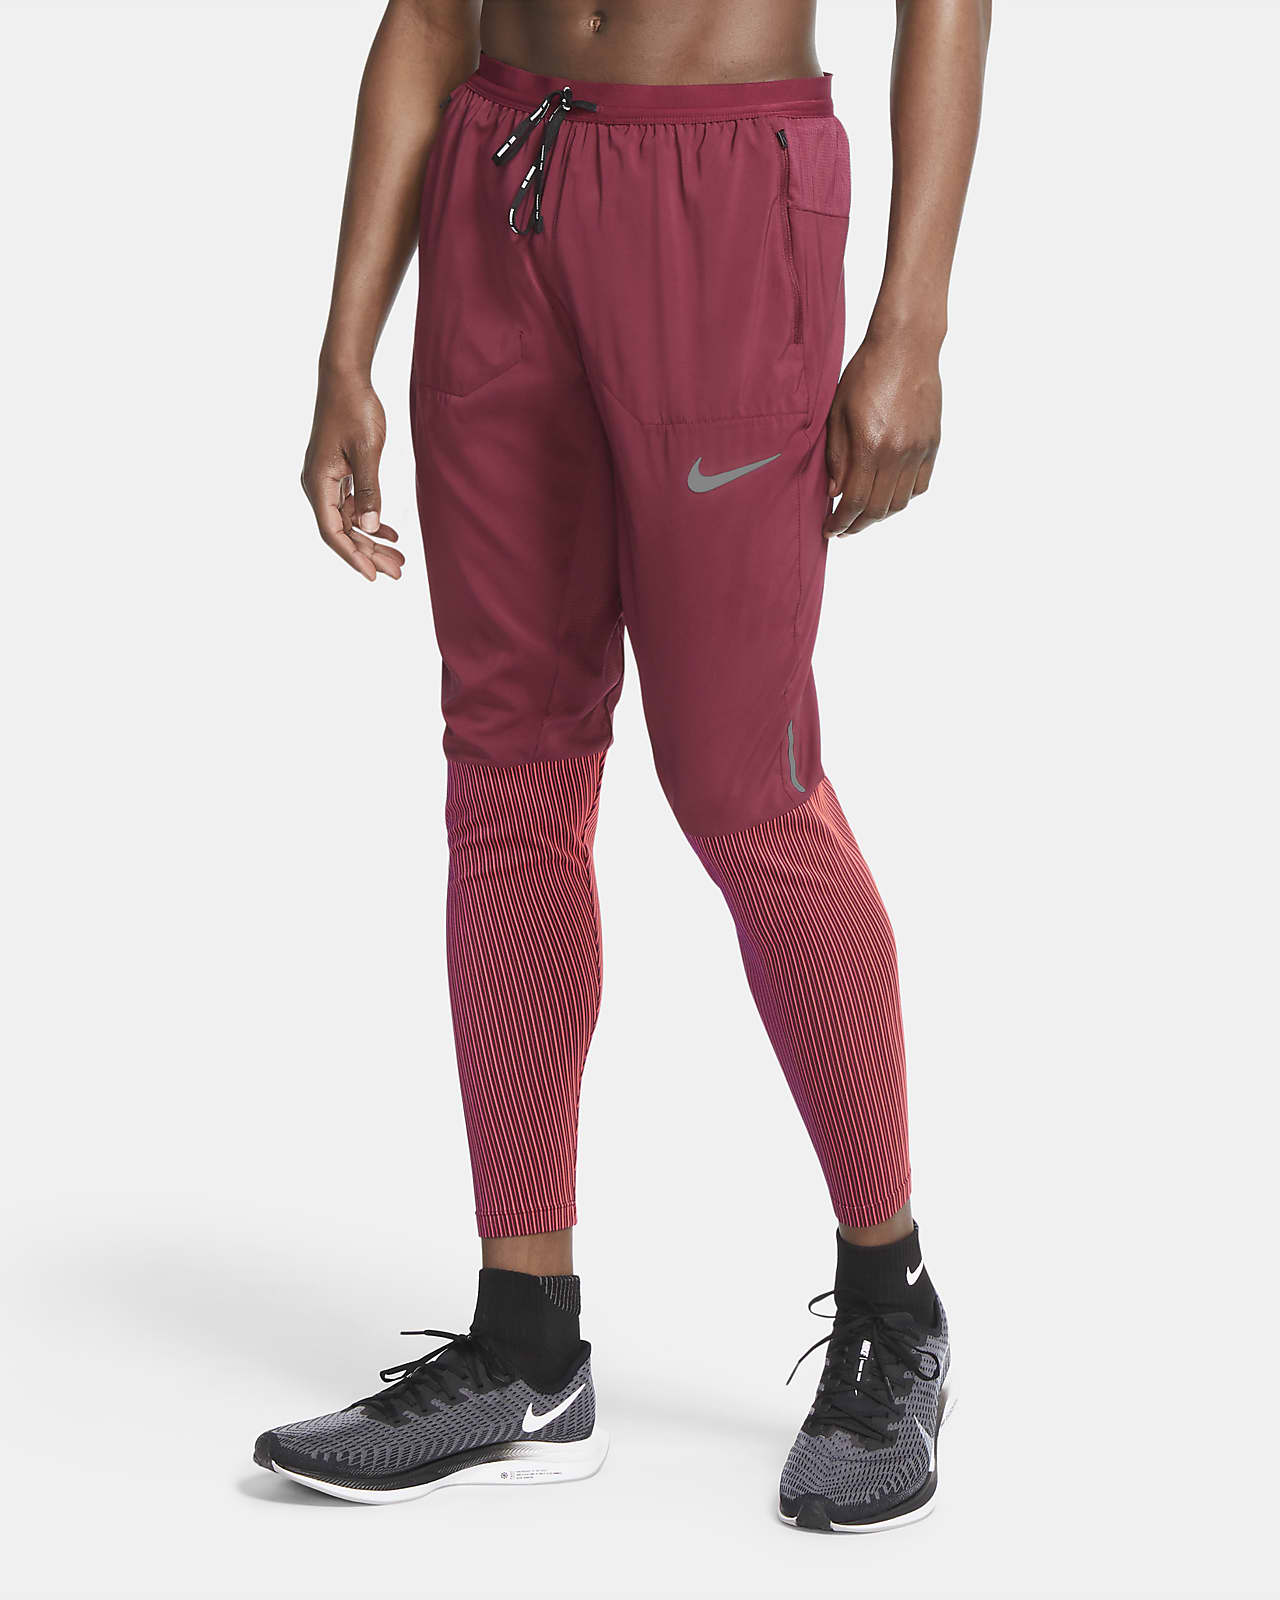 Pantalones de running híbridos para hombre Nike Phenom Elite Future Fast.  Nike.com